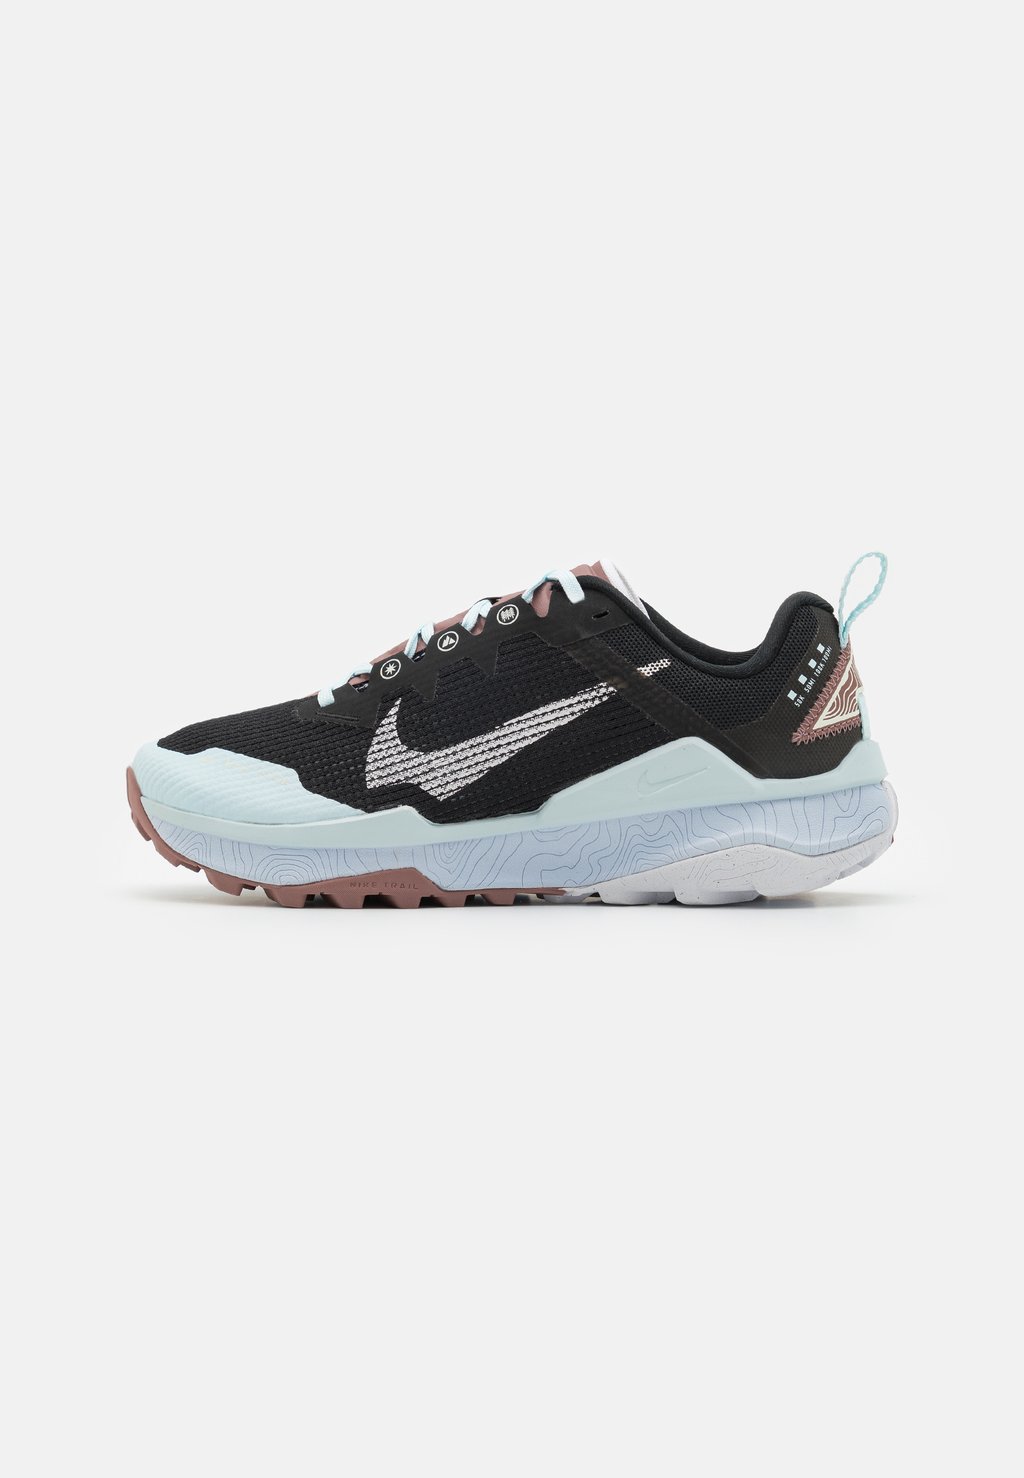 Кроссовки для бега по пересеченной местности REACT WILDHORSE 8 Nike, цвет black/white/glacier blue/football grey/smokey mauve